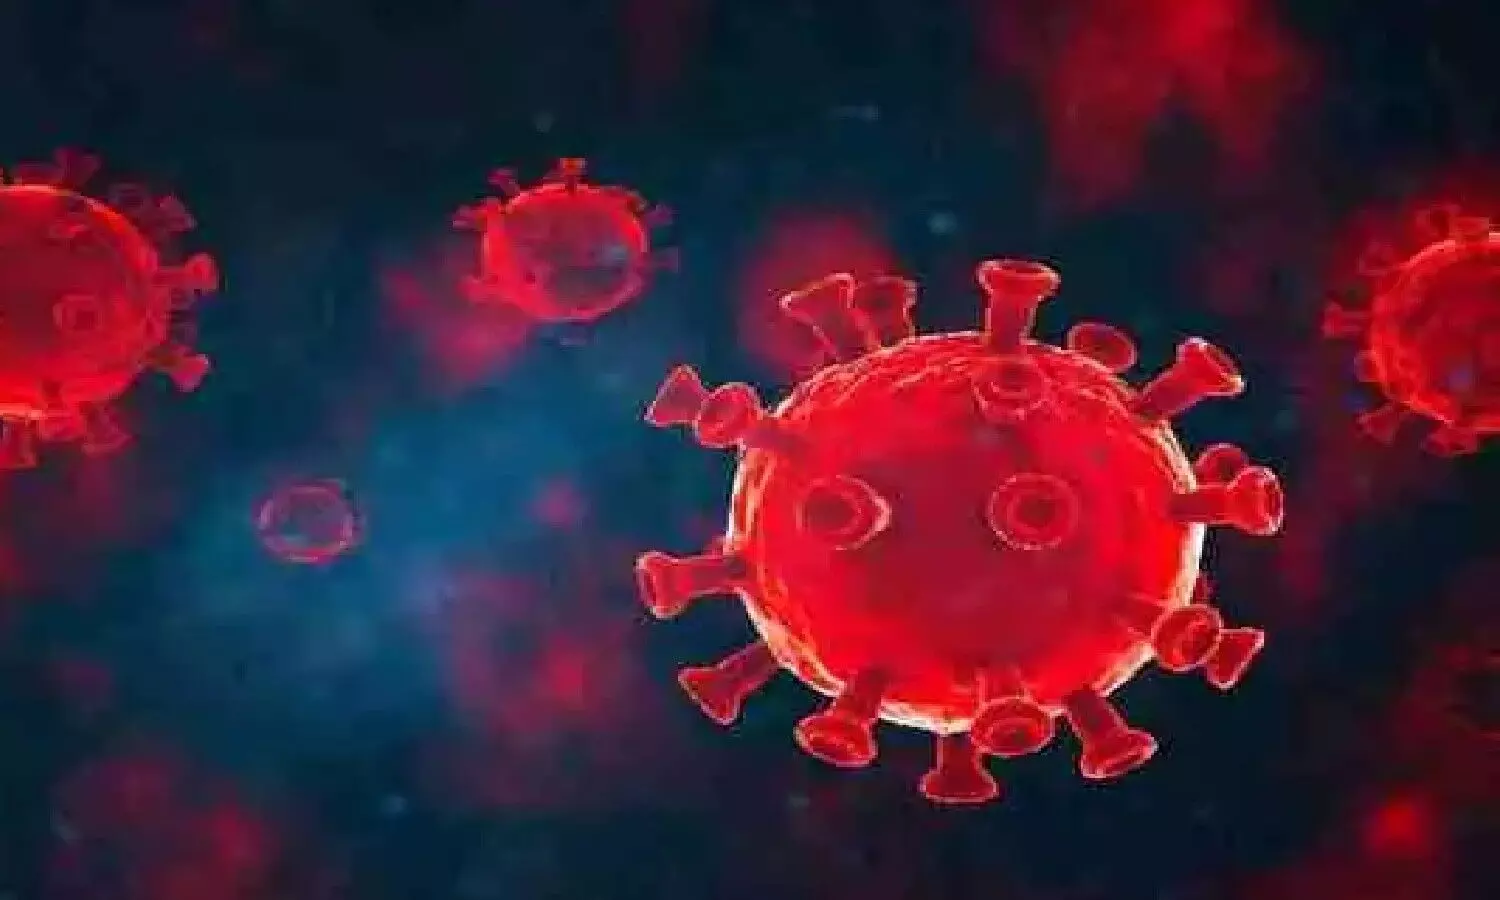 कोरोना वायरस के संक्रमण का खतरा दिन प्रति दिन बढ़ता ही जा रहा है।